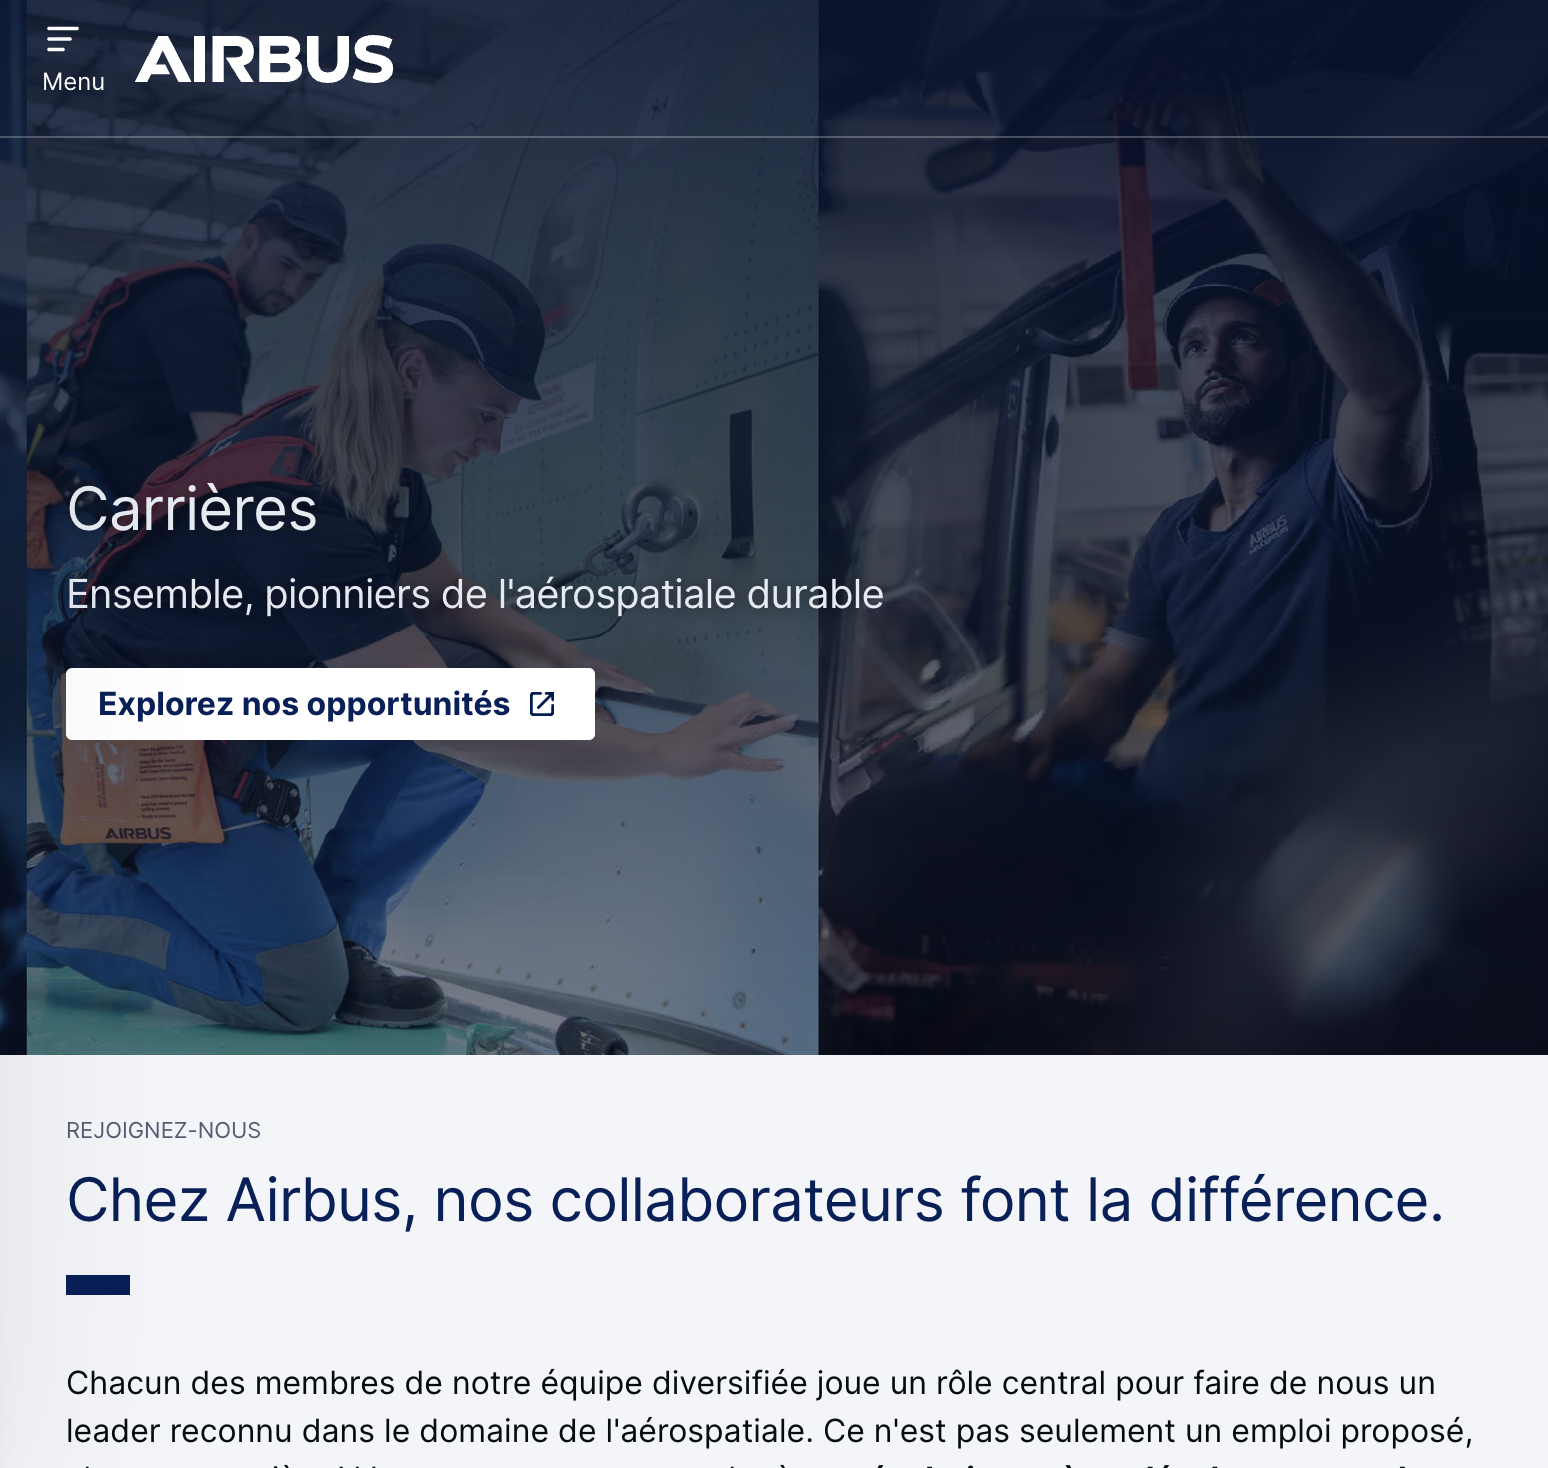 Airbus marque employeur